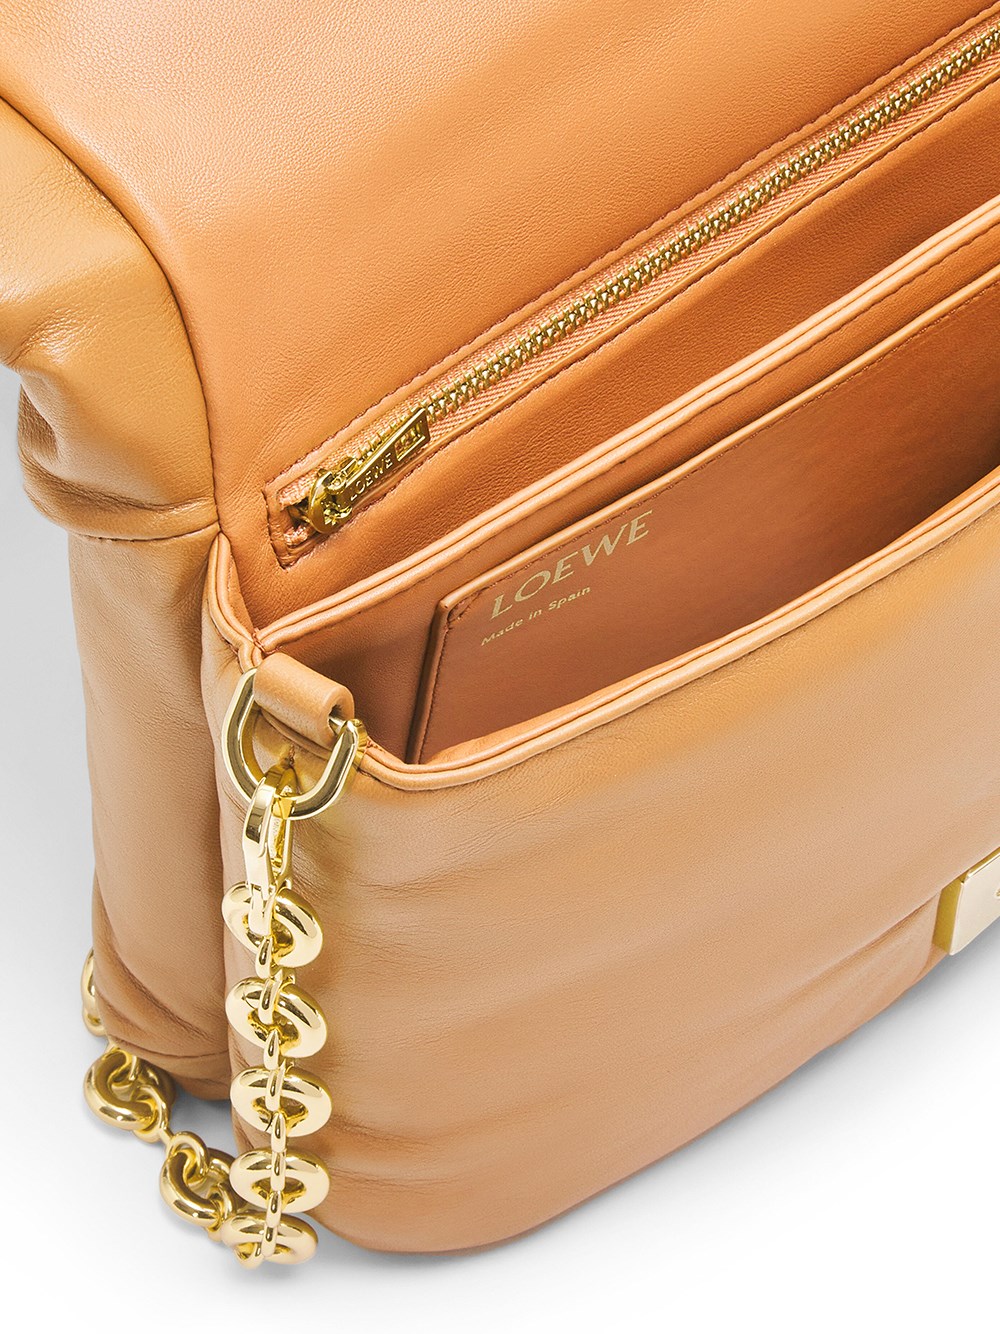 24S Loewe Goya Puffer bag in pleated leather 4700.00